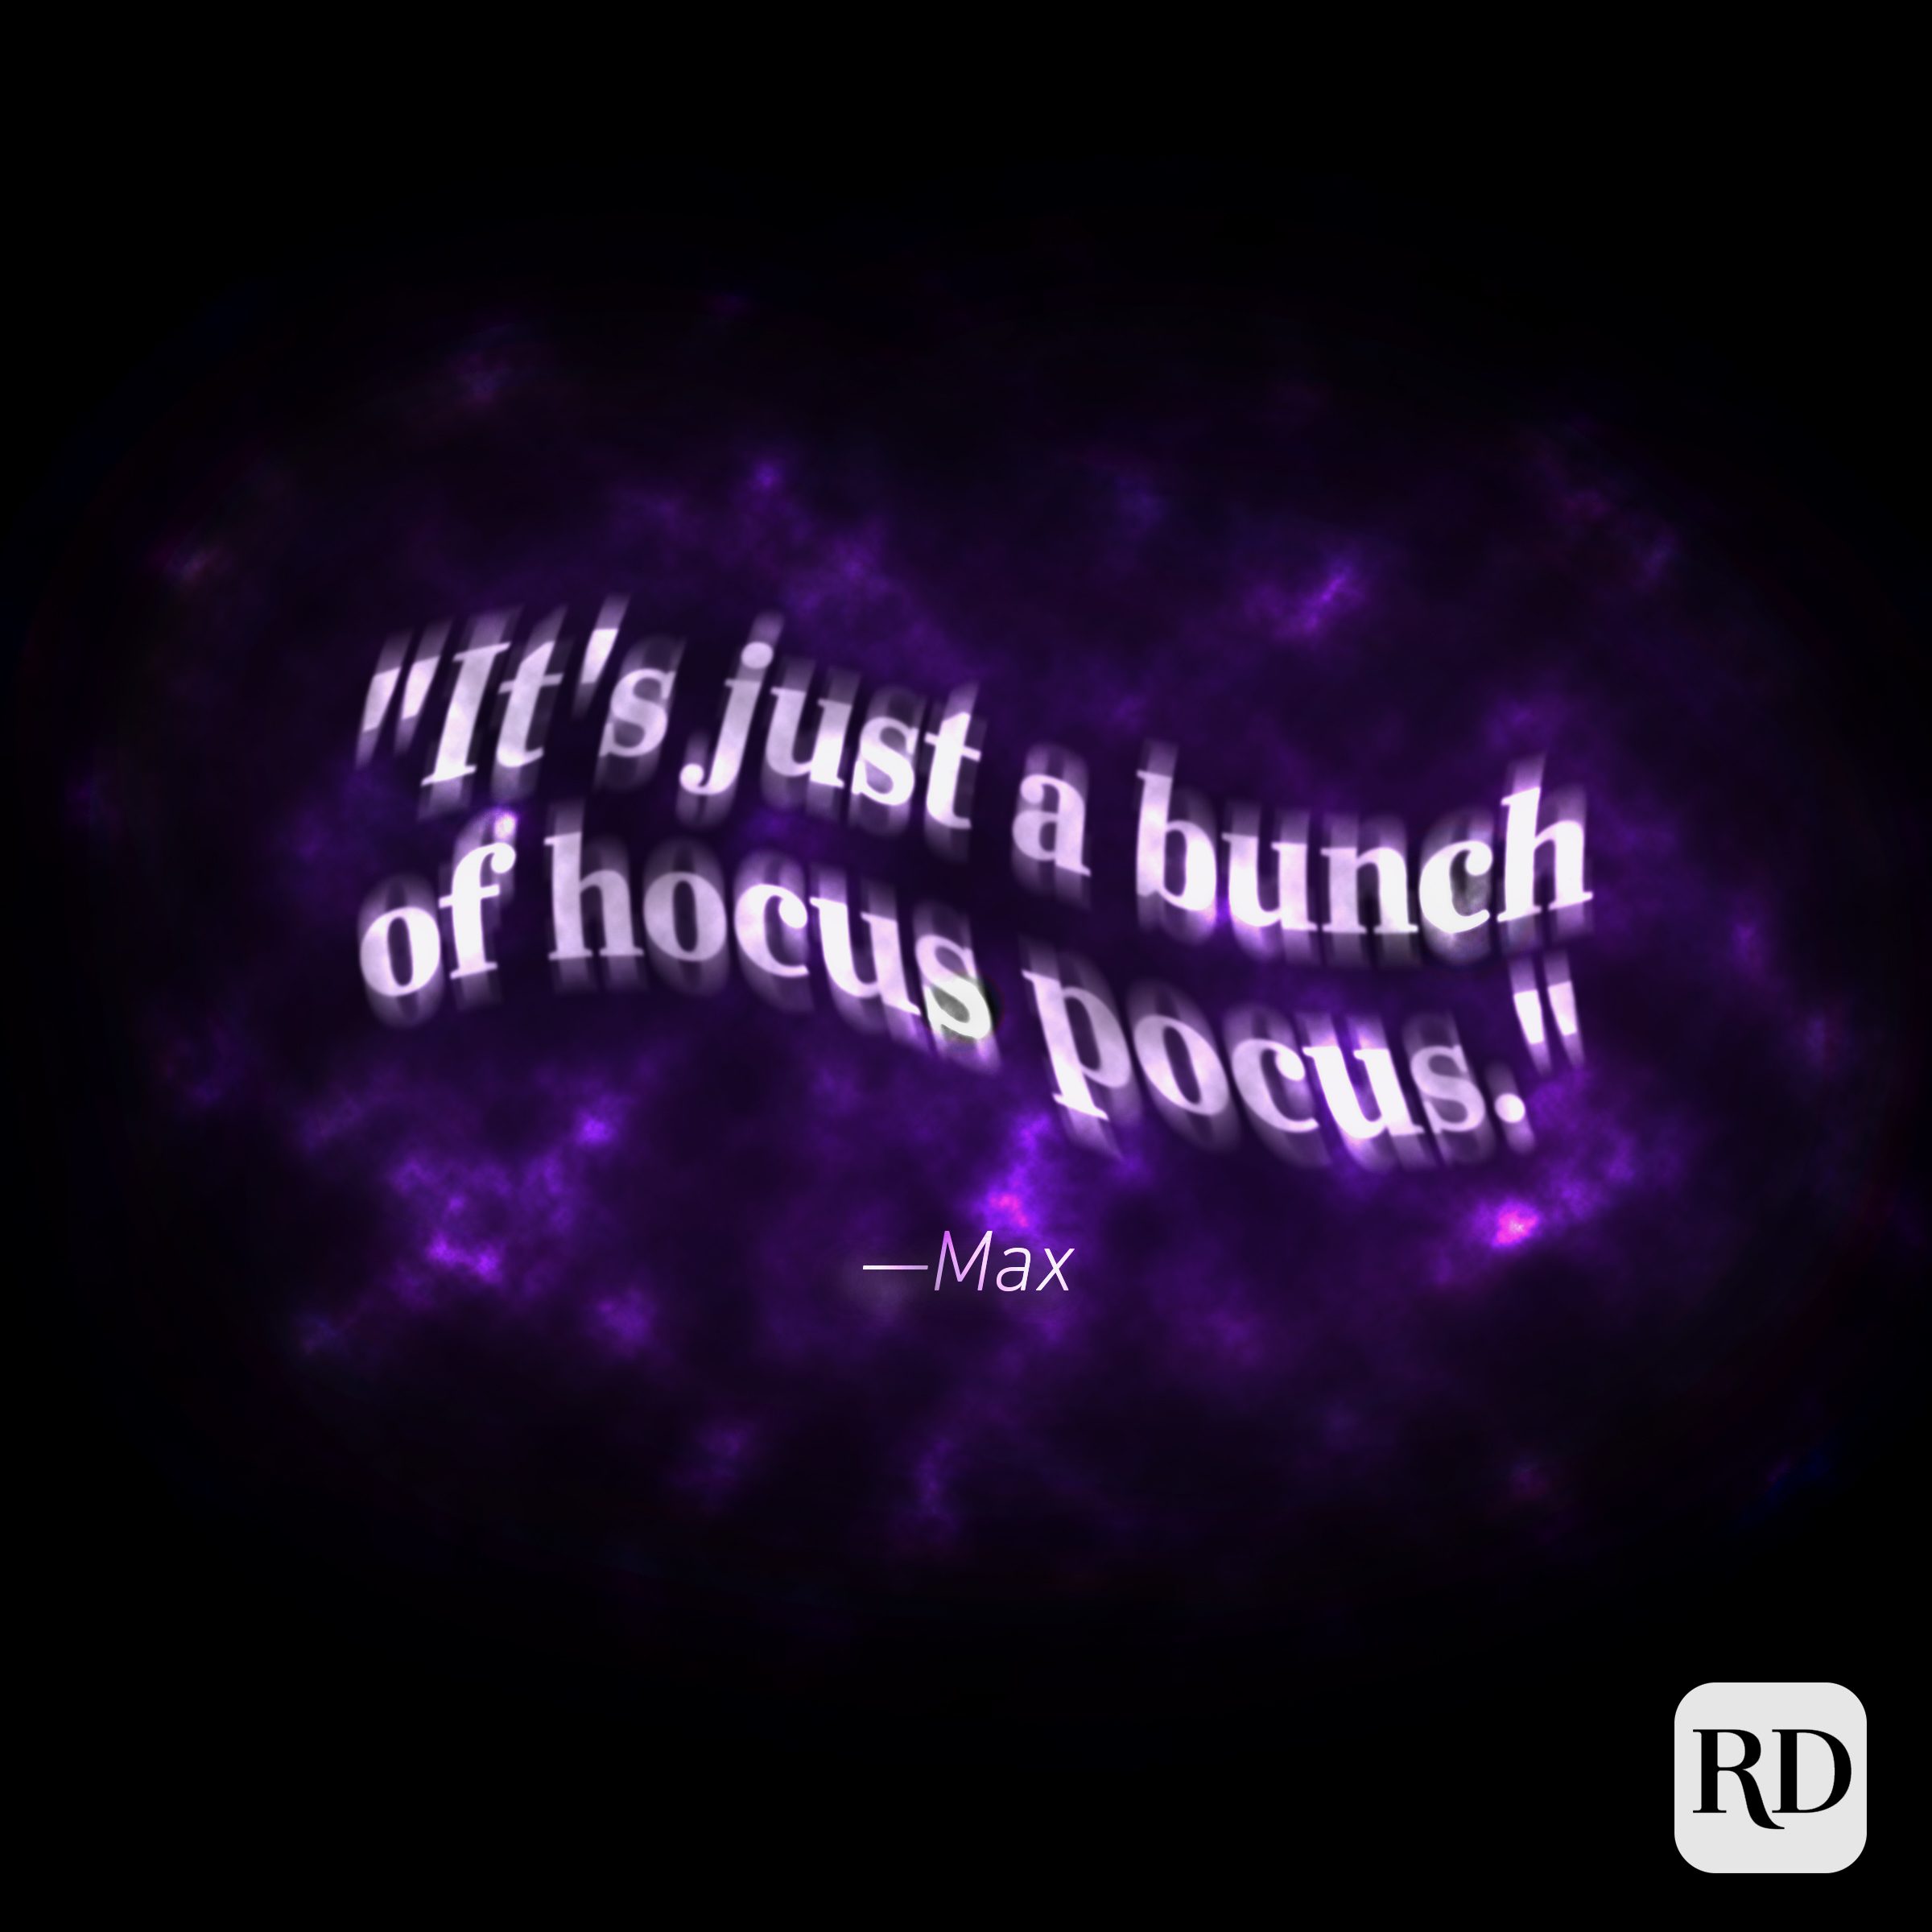 71 Best 'Hocus Pocus' Quotes - Hocus Pocus Instagram Captions